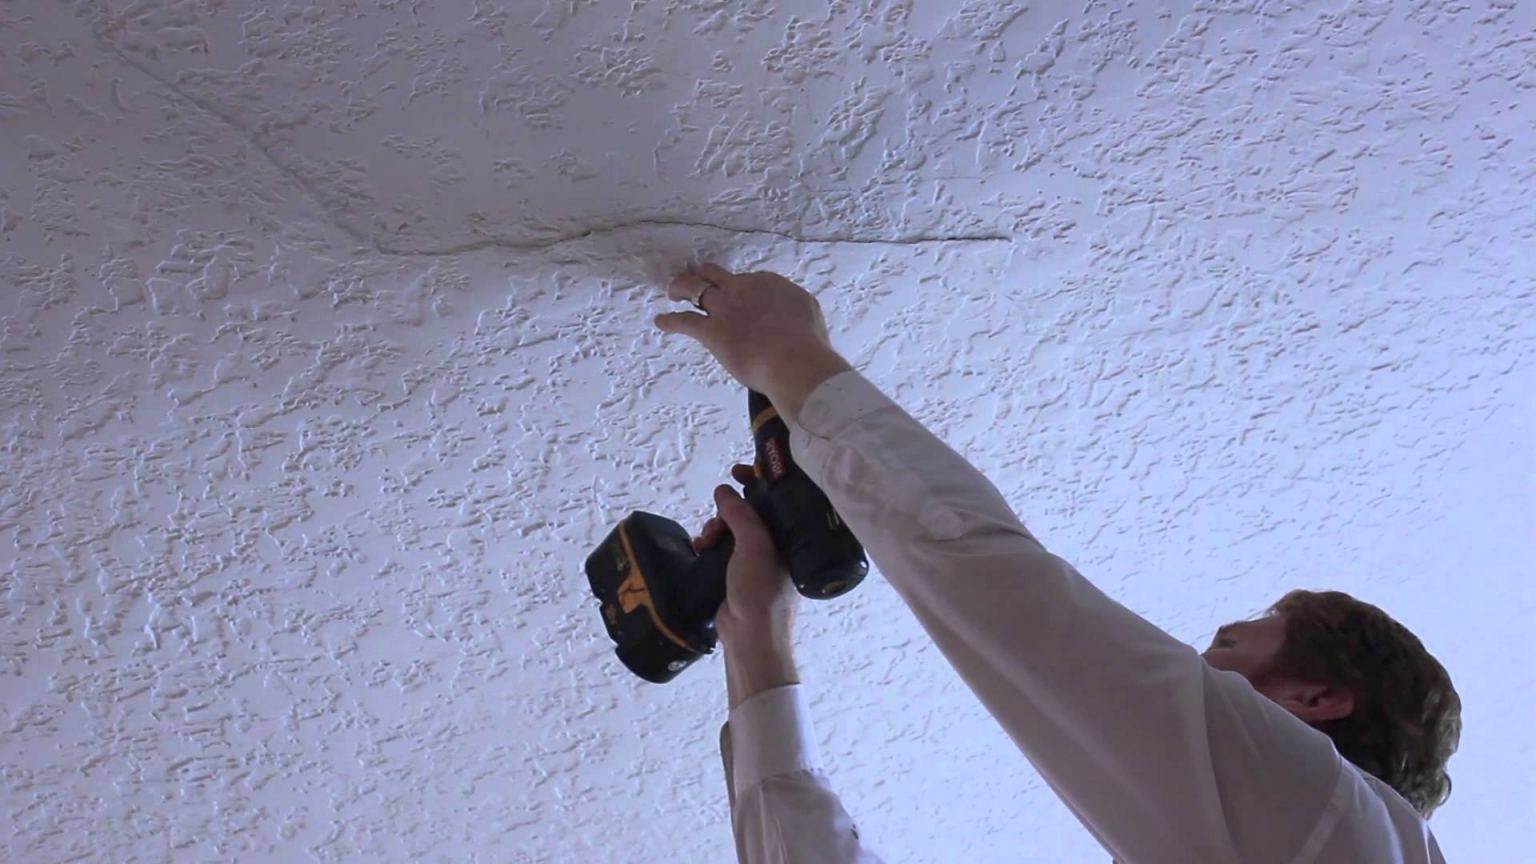 Декоративная штукатурка на потолок: особенности отделки (фото)